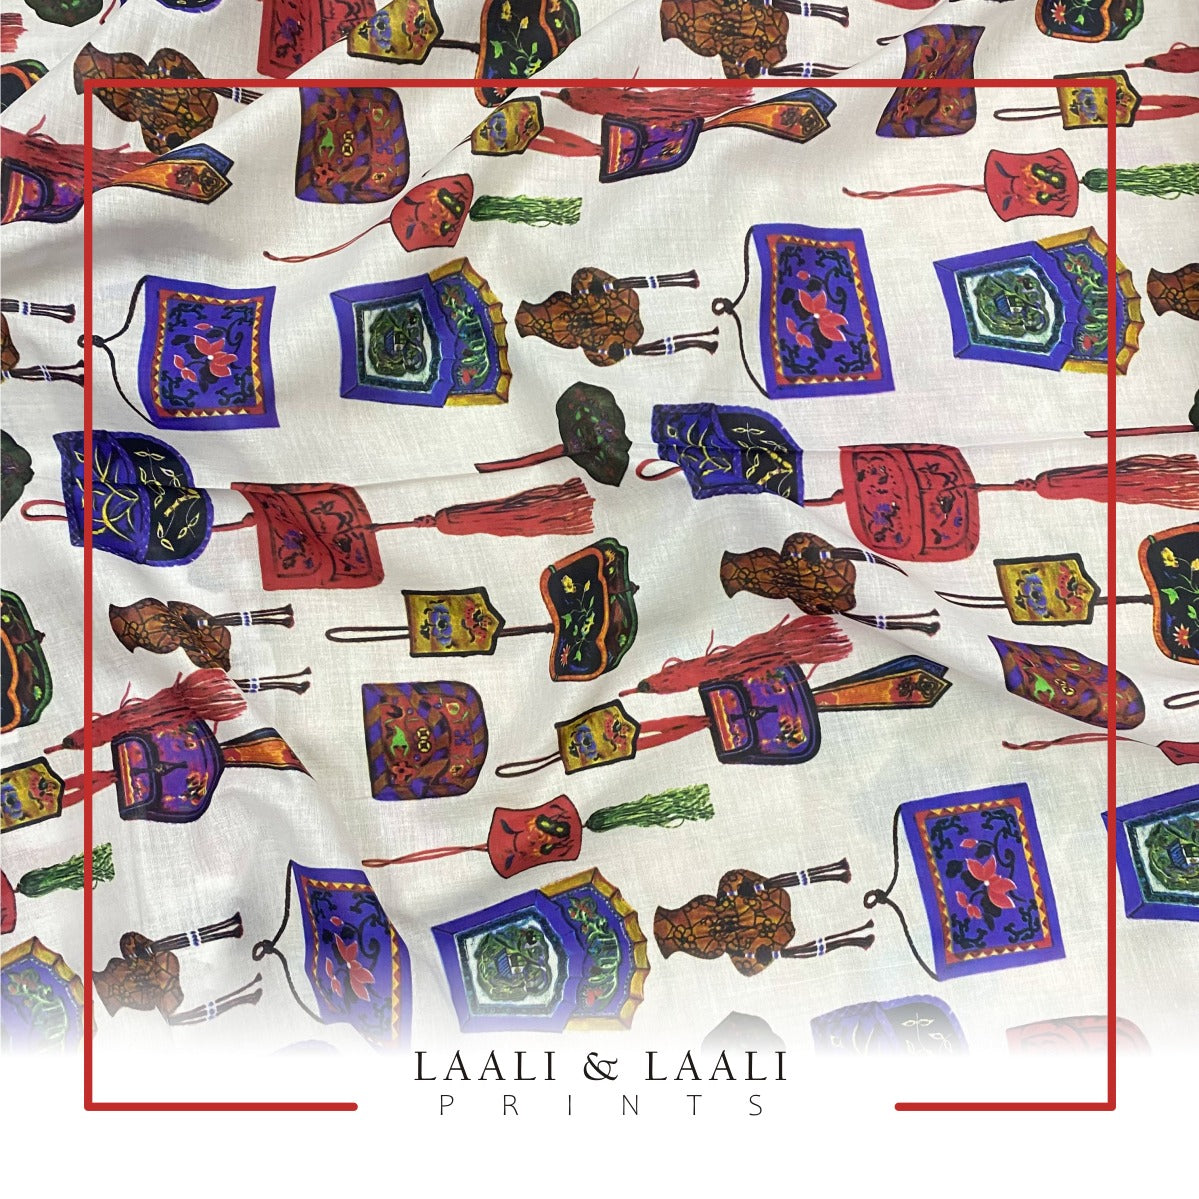 Laali Digital Prints